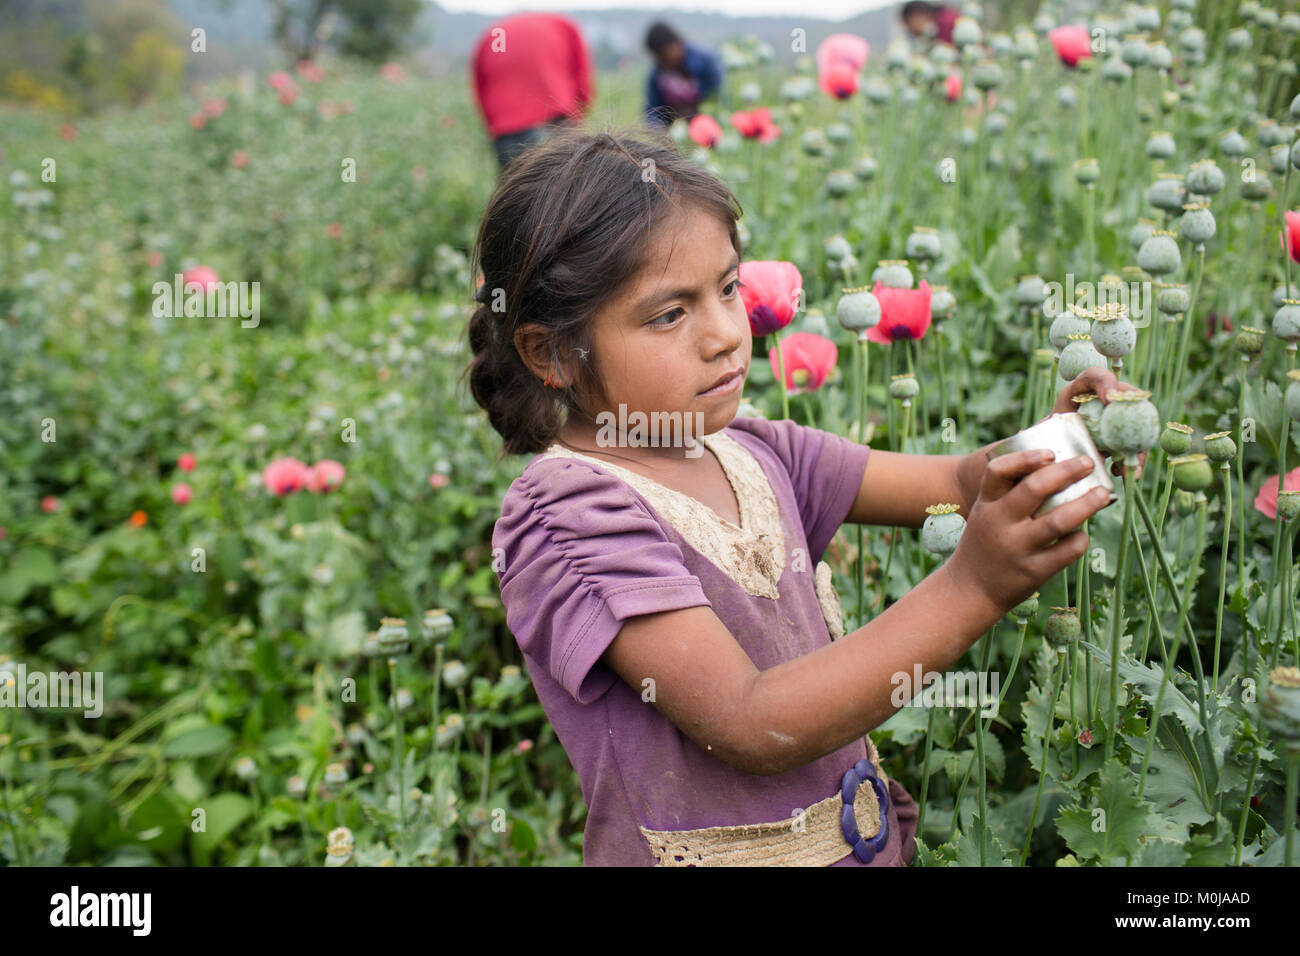 Une jeune fille tire "GUM", un liquide laiteux qui s'échappe des fleurs de  pavot et est plus tard transformé en héroïne, dans l'État mexicain de  Guerrero, le 23 avril 2016. Guerrero est